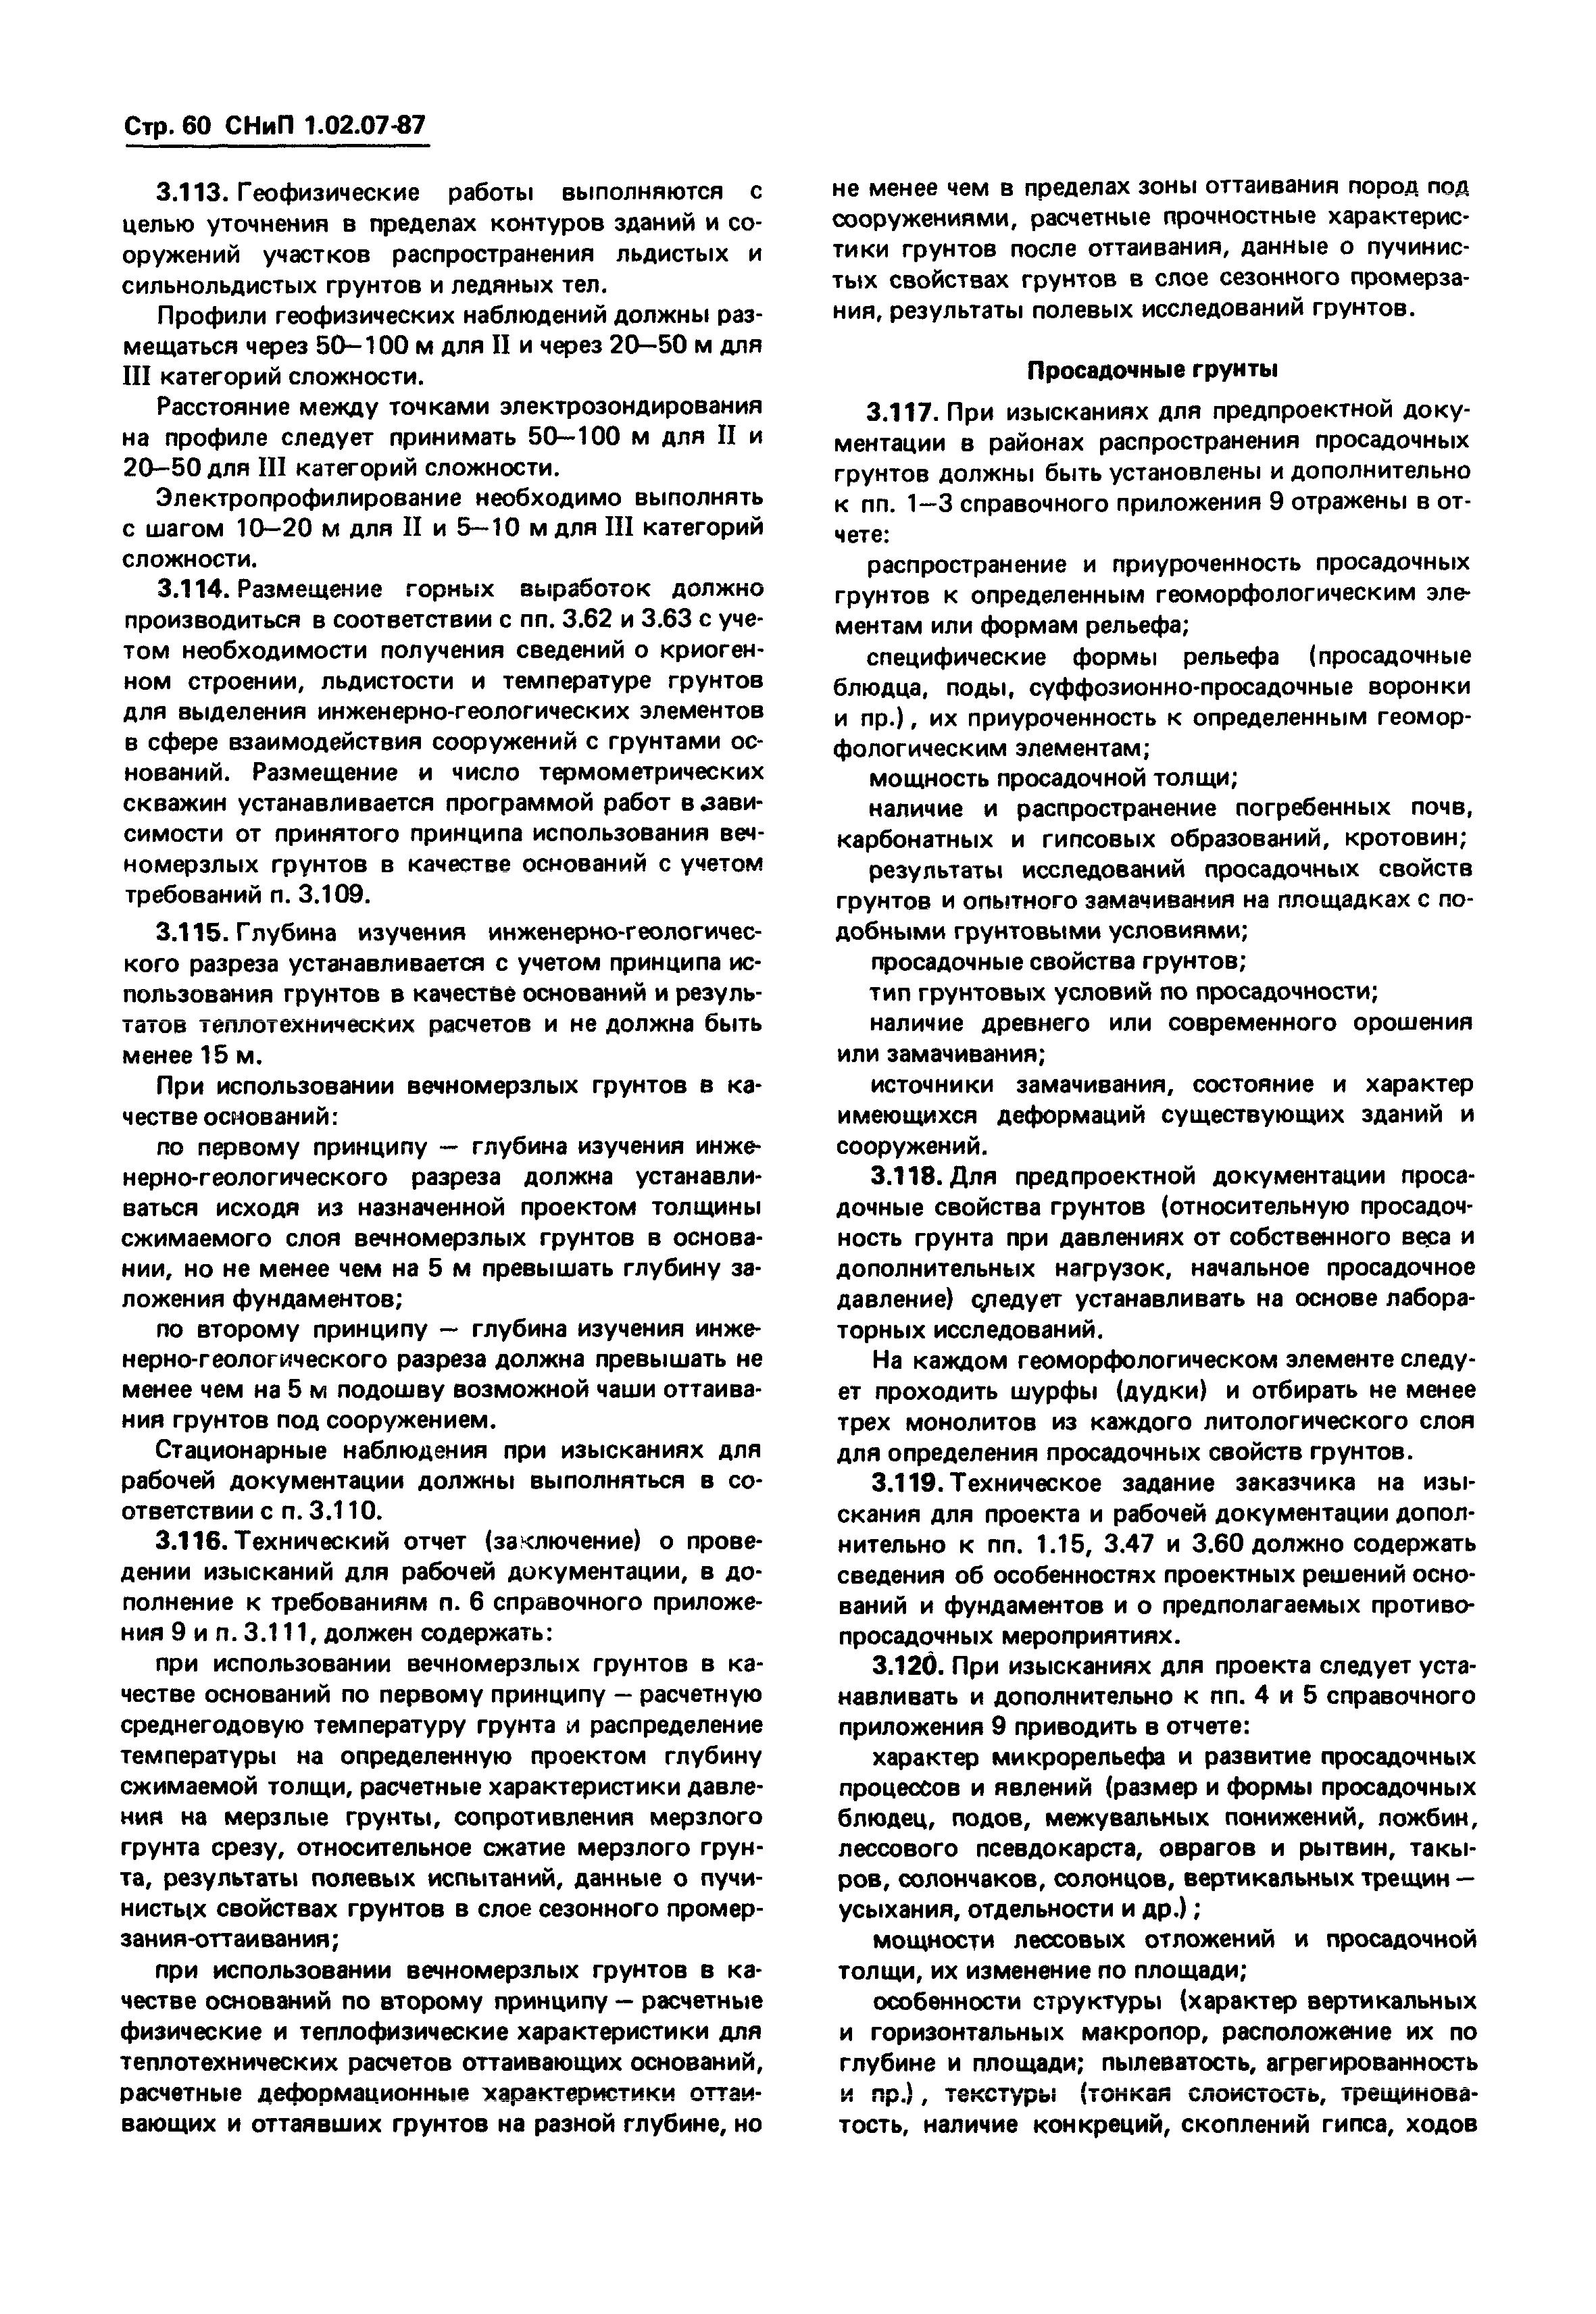 СНиП 1.02.07-87